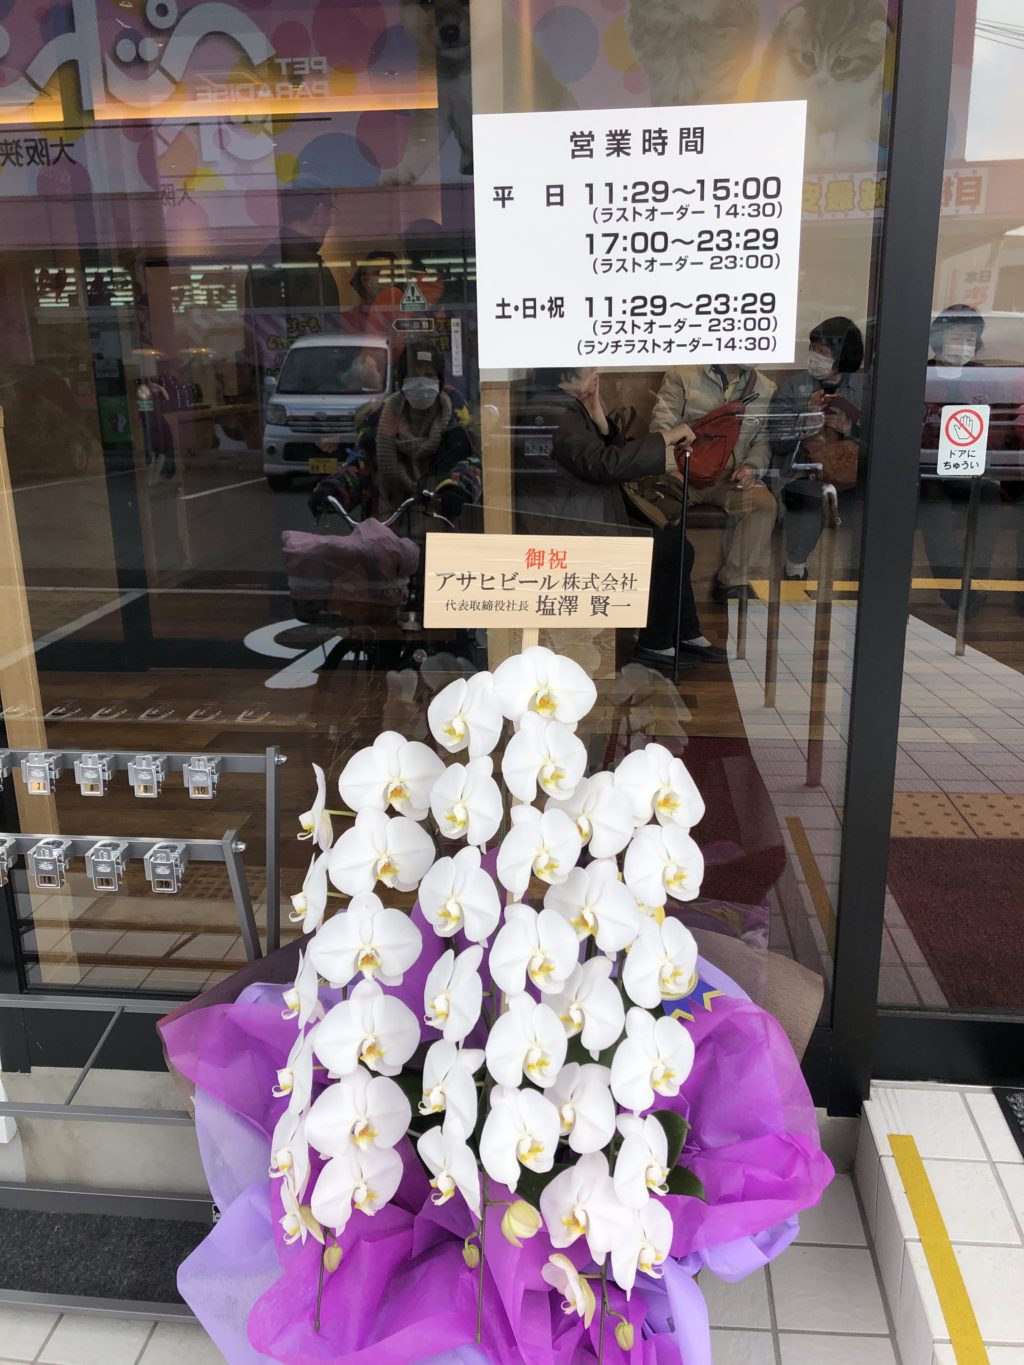 3 18オープン 大阪狭山市に 全品390円 安くて美味しい焼肉店 焼肉1129 が本日オープン さかにゅー